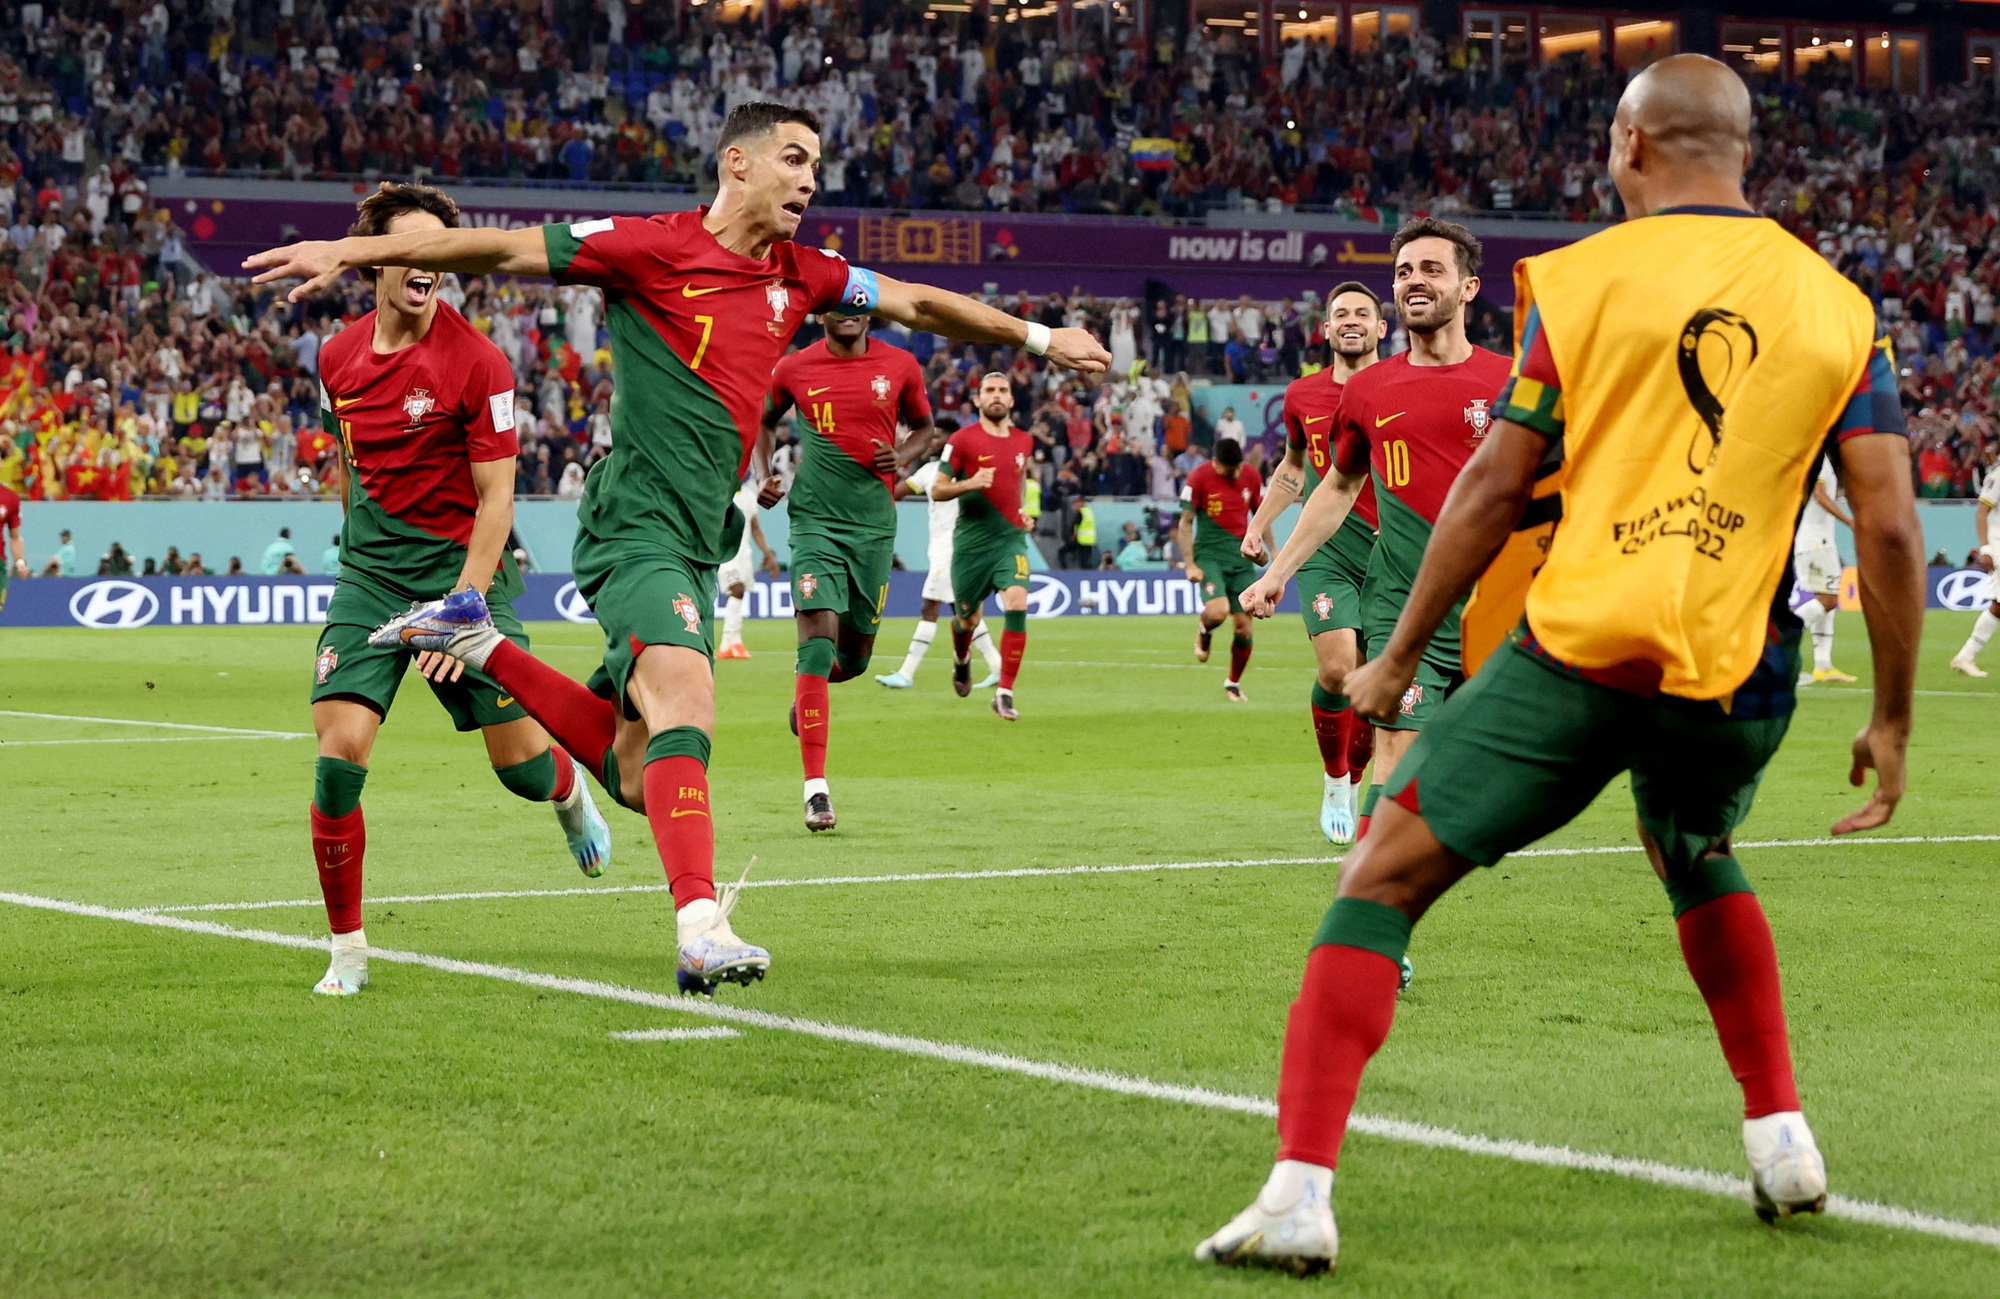 Hãy theo dõi đội hình tuyển Bồ Đào Nha để xem họ sẽ chơi thế nào trong trận đấu tới.